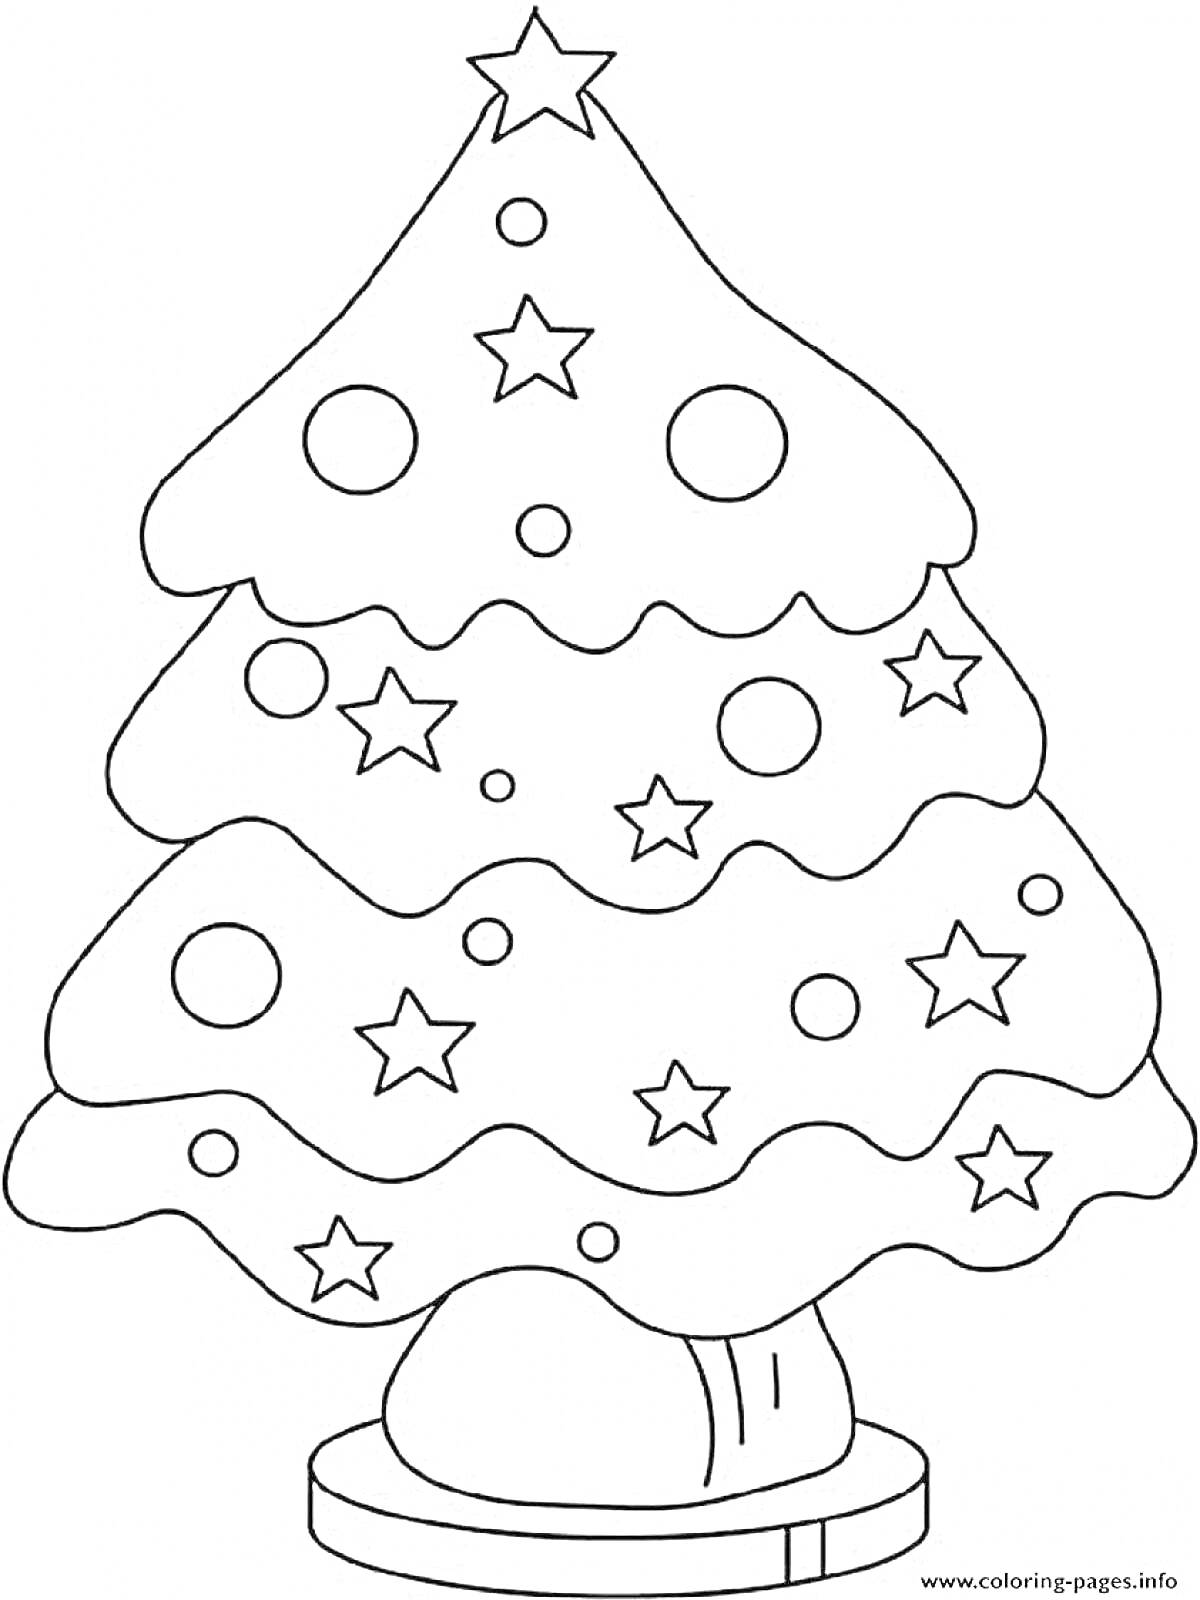 Раскраска Елочка с новогодними украшениями, звезды и шары